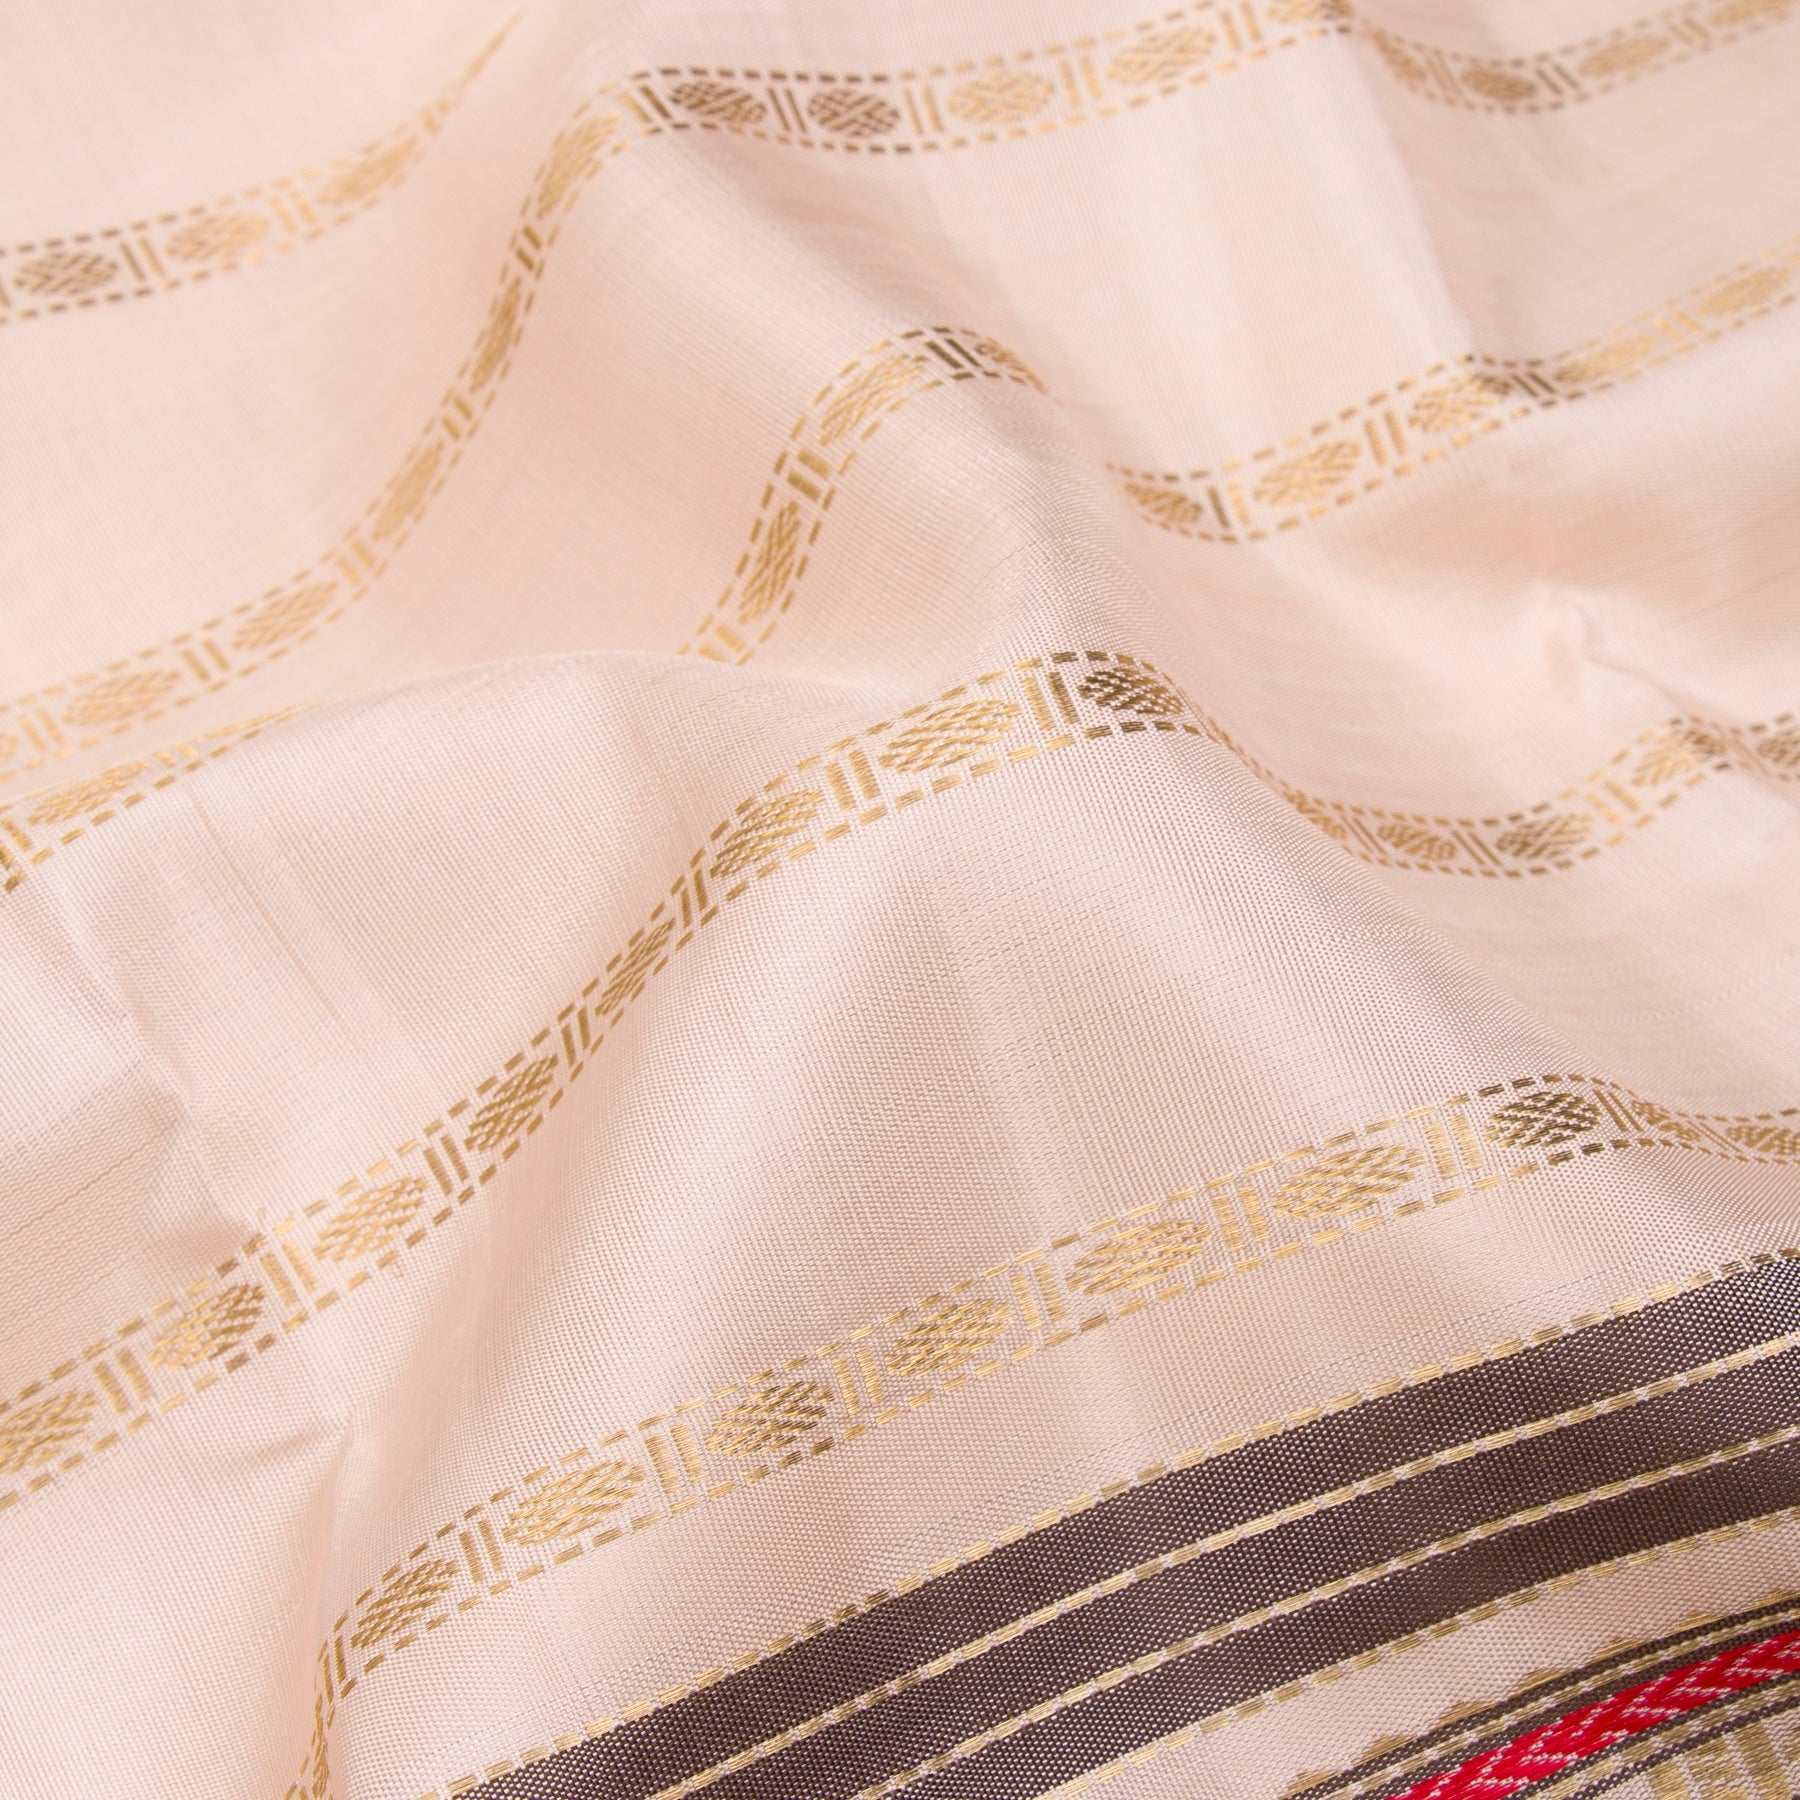 Kanakavalli Kanjivaram Silk Sari 22-040-HS001-15018 - Fabric View